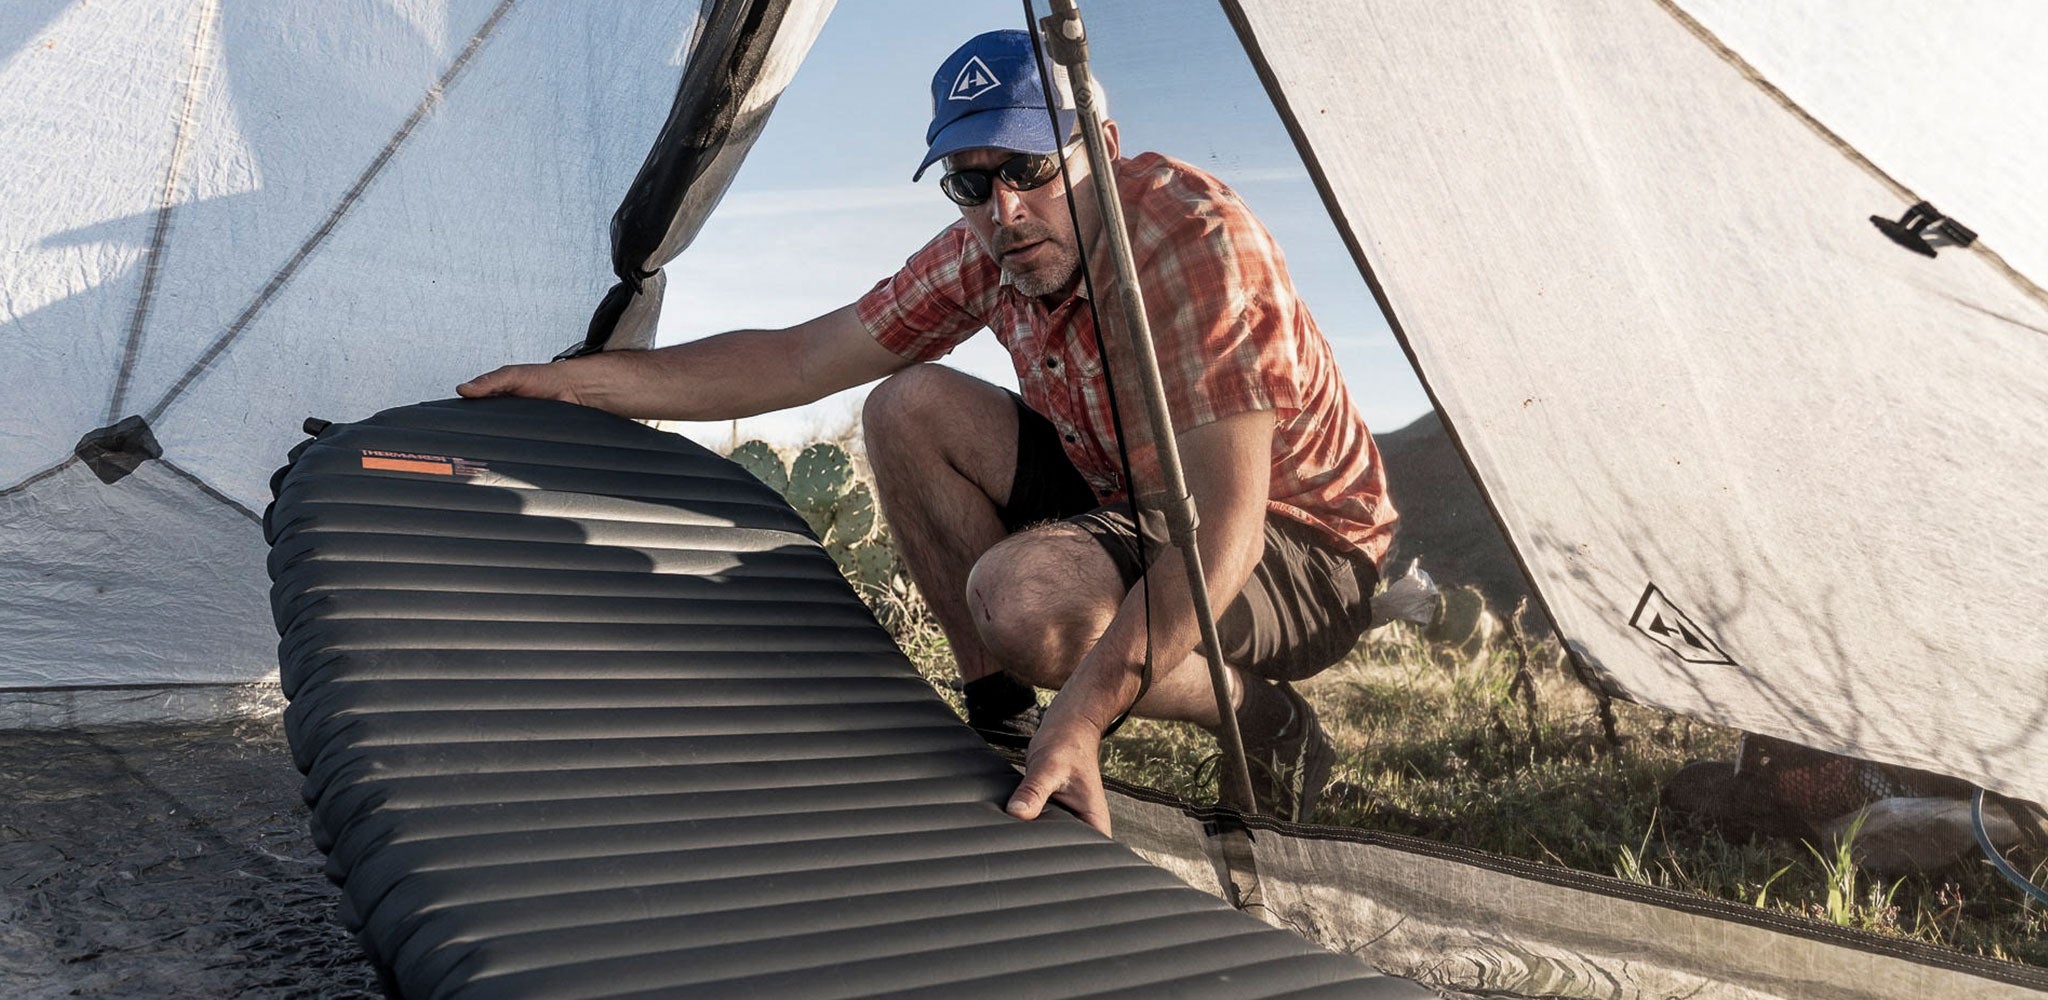 A man putting an air mattress into a tent.